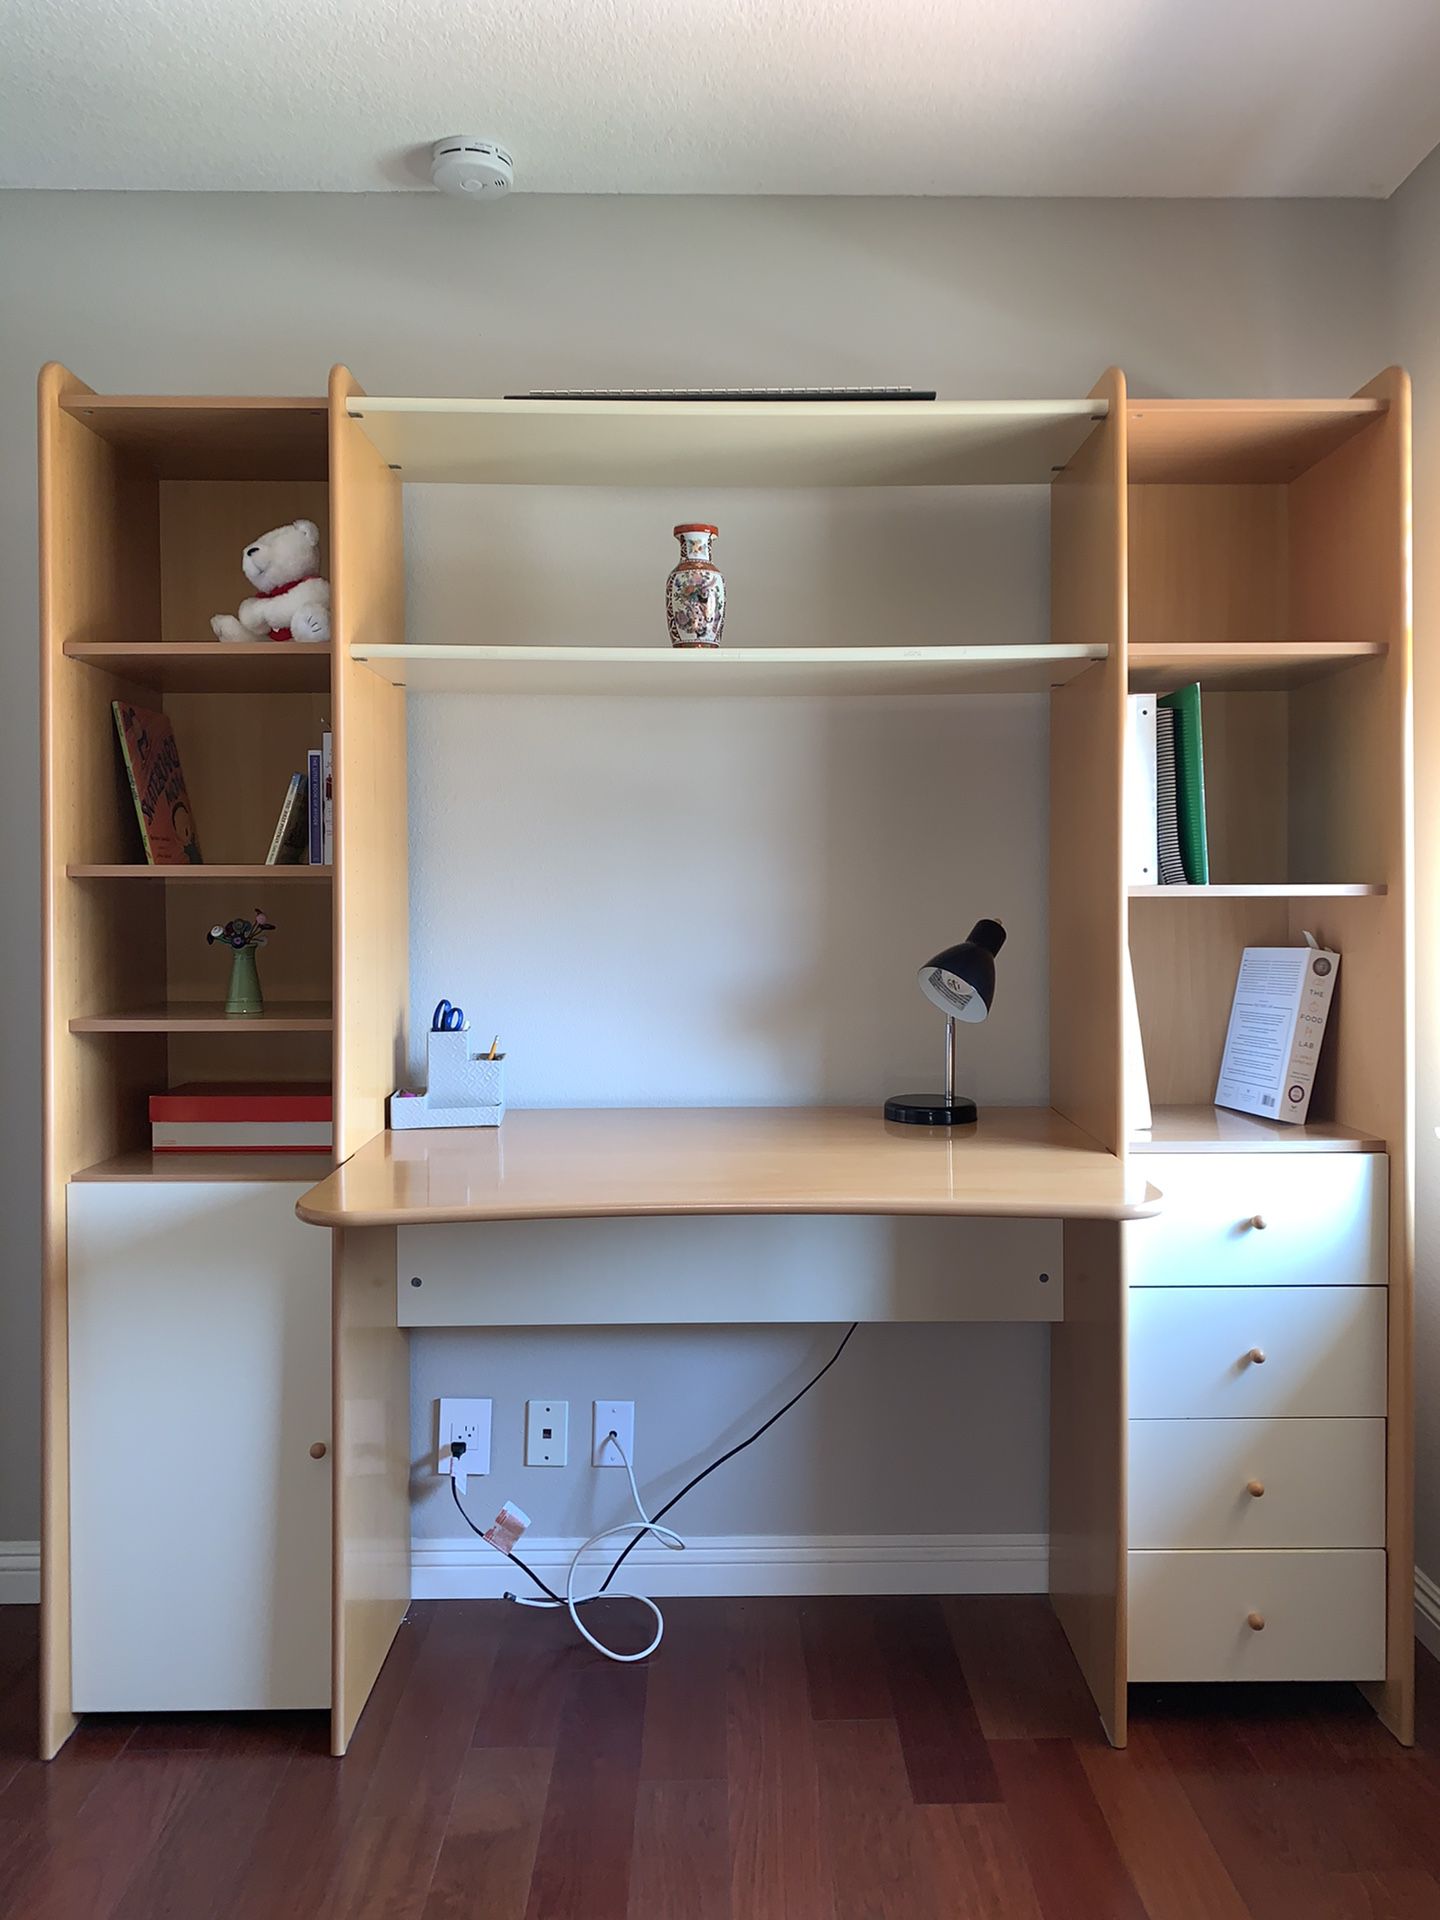 Plummer’s desk and bookshelves